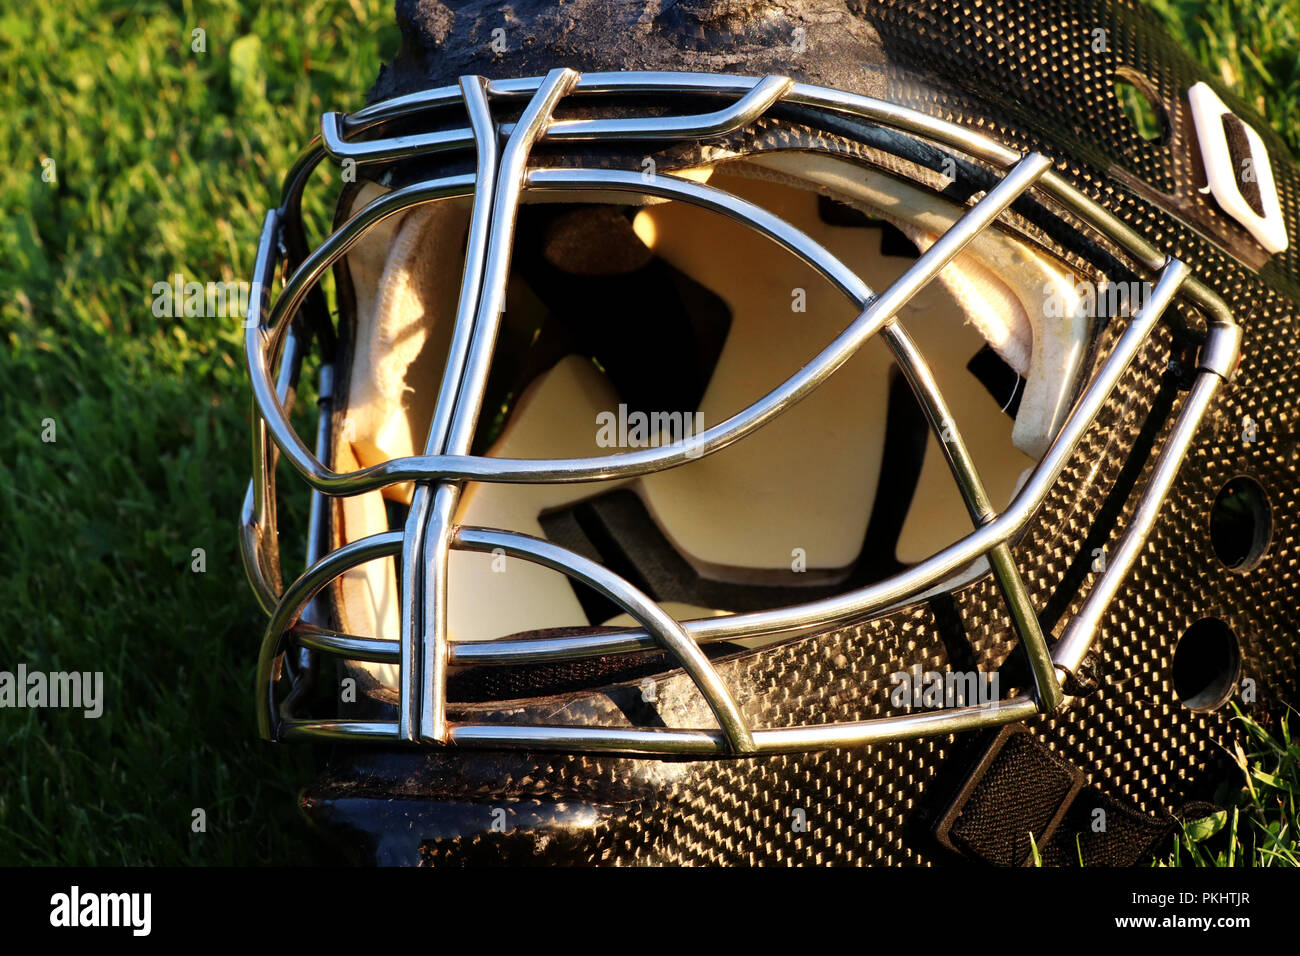 Ein goalie schwarzen Helm für Eishockey aus Carbon Material Stockfoto